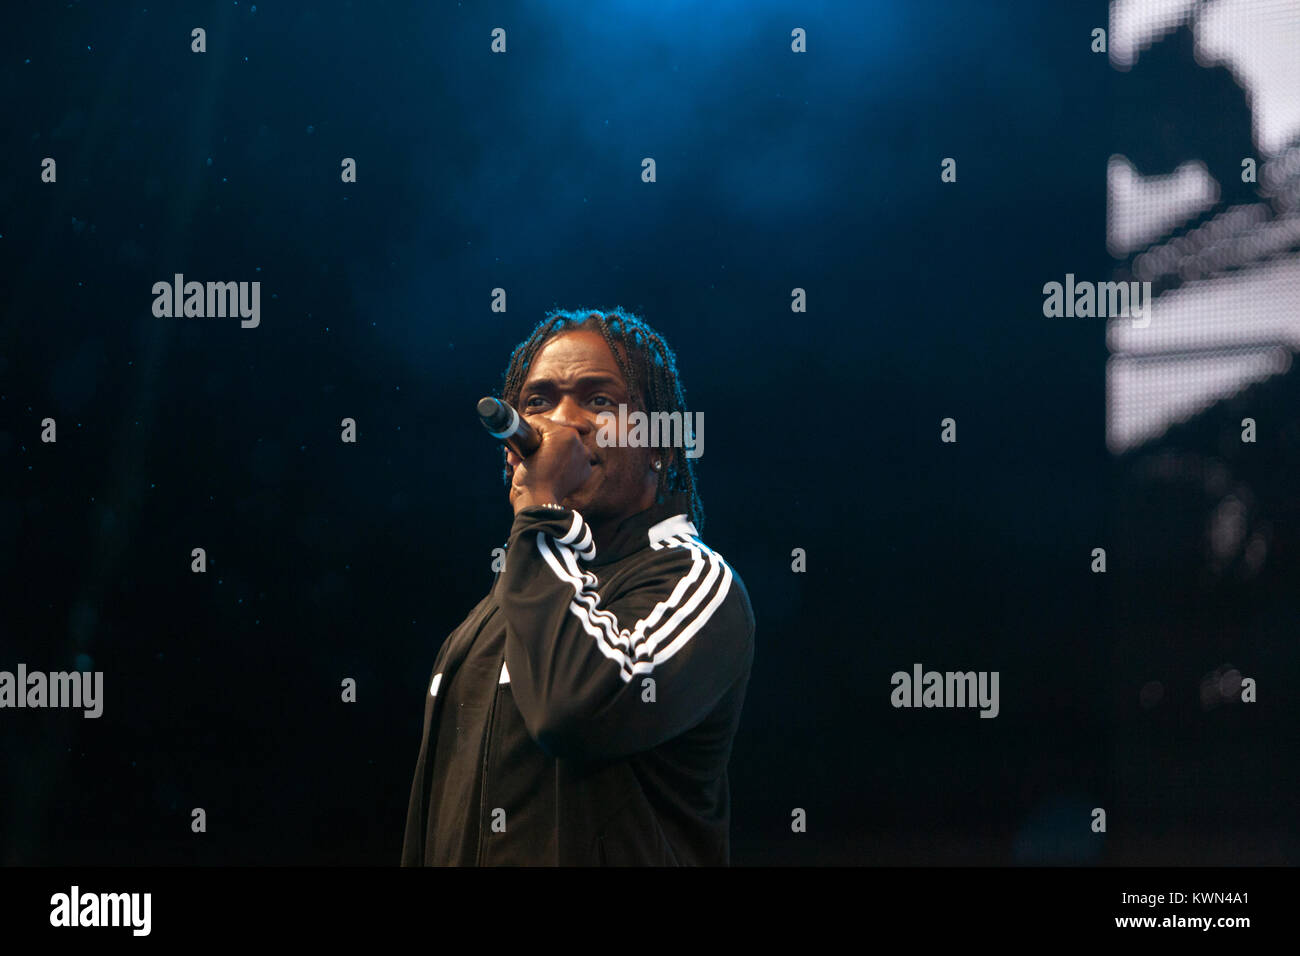 Der amerikanische Rapper Pusha T führt ein Live Konzert in der deutschen Hip Hop und Reggae Festival Splash! Festival 2015 Ferropolis in Gräfenhainichen. Pusha T wird auch als die Hälfte der bekannten US-Amerikanischen Hip-hop duo Clipse. Deutschland, 12/07 2015. Stockfoto